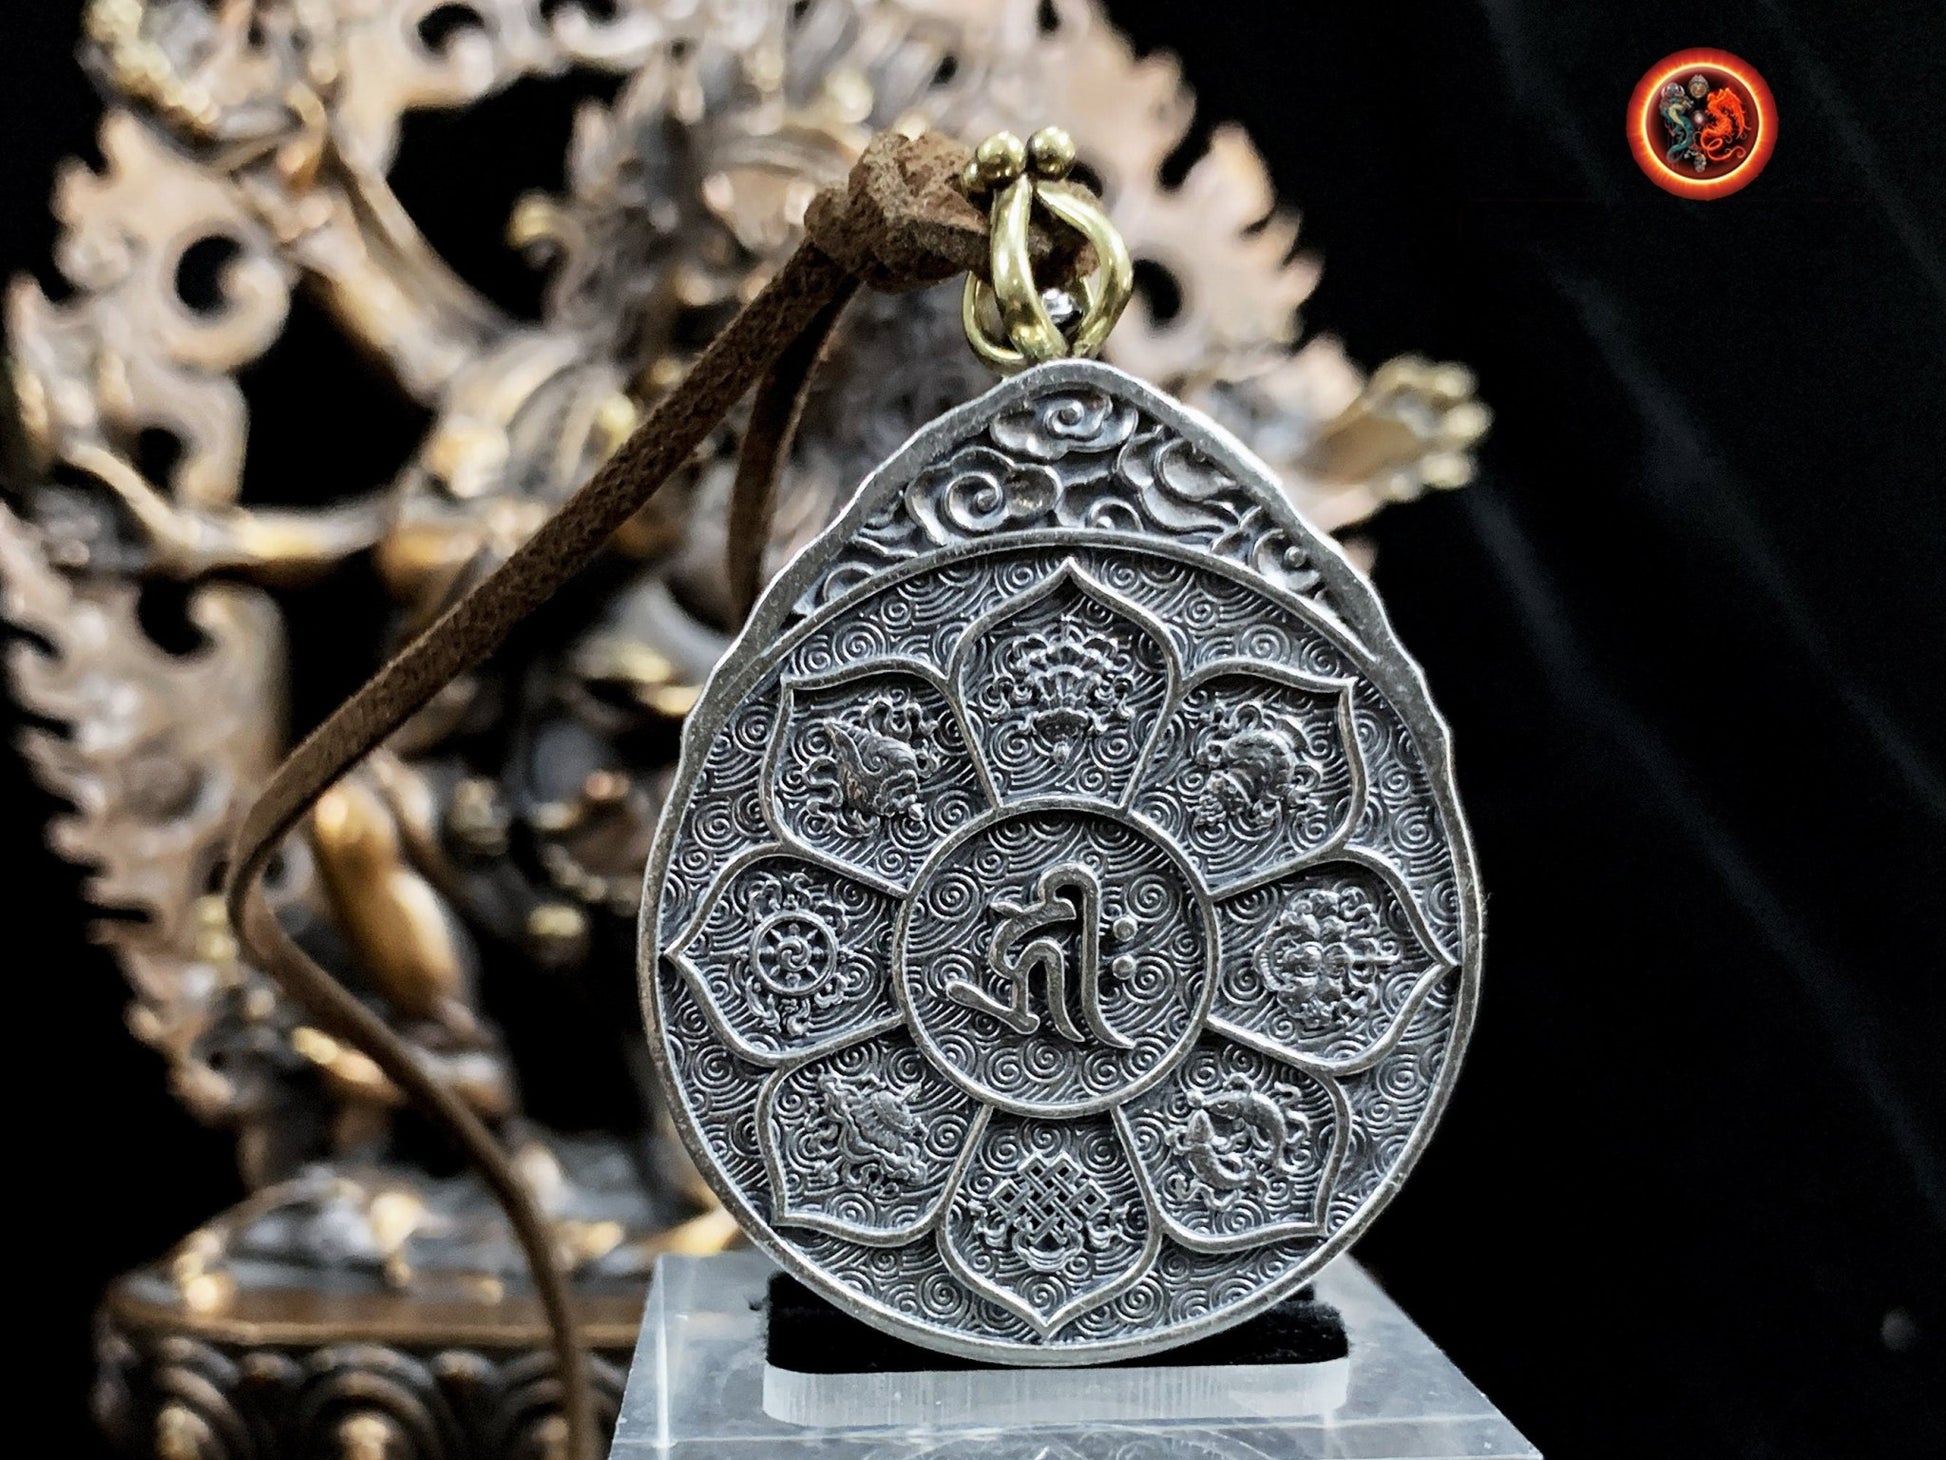 Pendentif, reliquaire, protection bouddhiste tibétaine. ouvrant, trigrammes bagua tournant. Argent 925. Roue du dharma - obsidian dragon